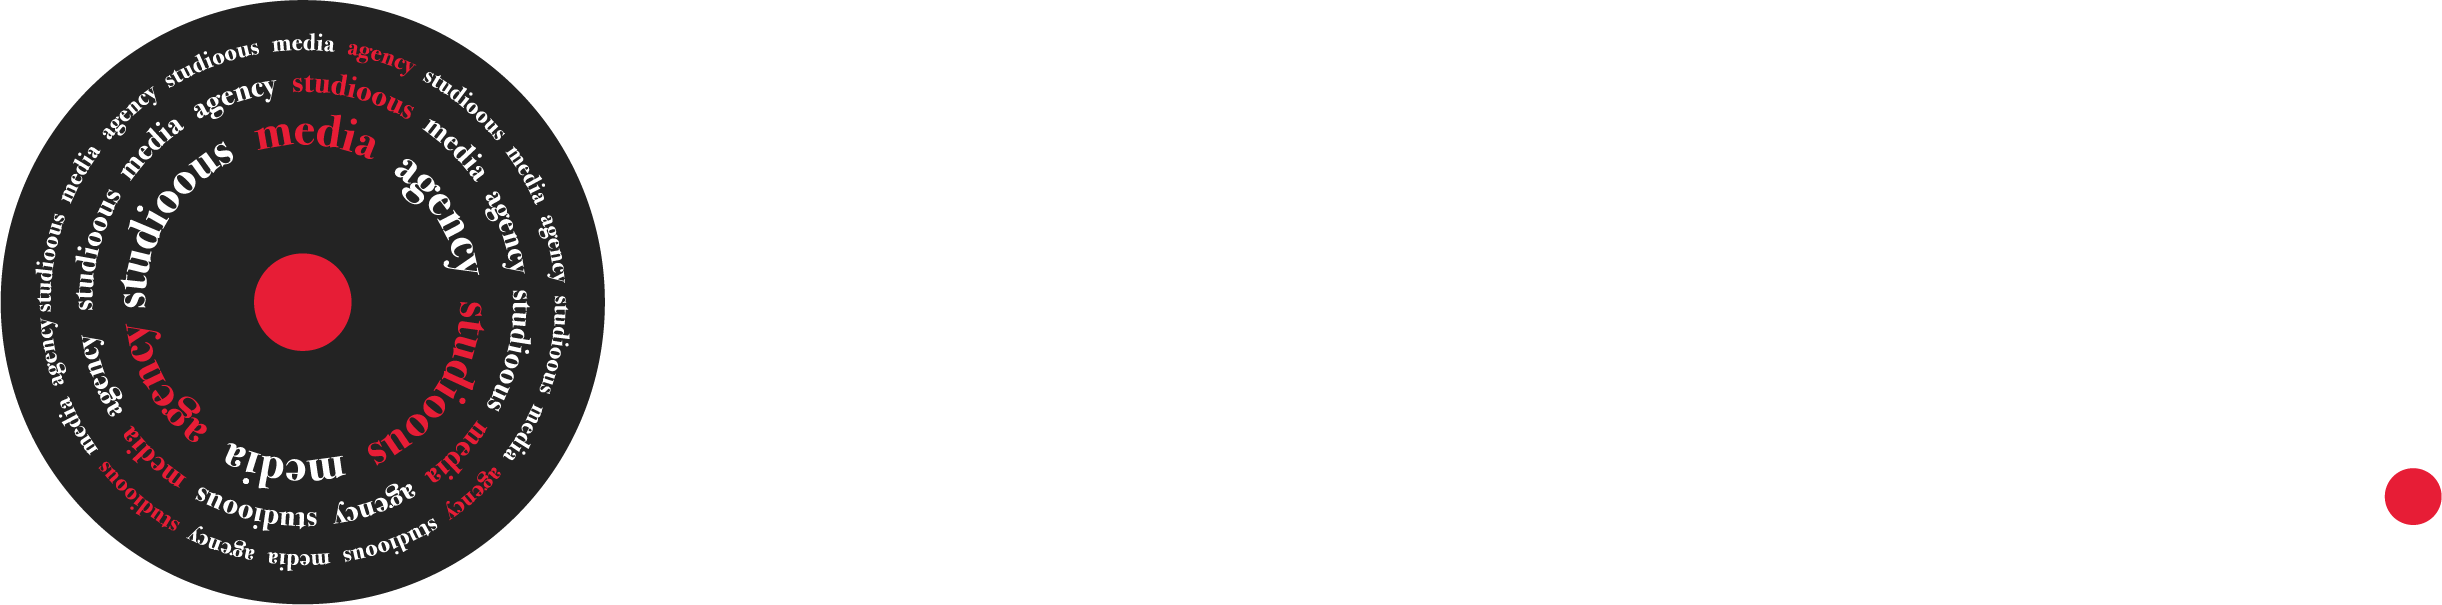 Studioous Media Agency